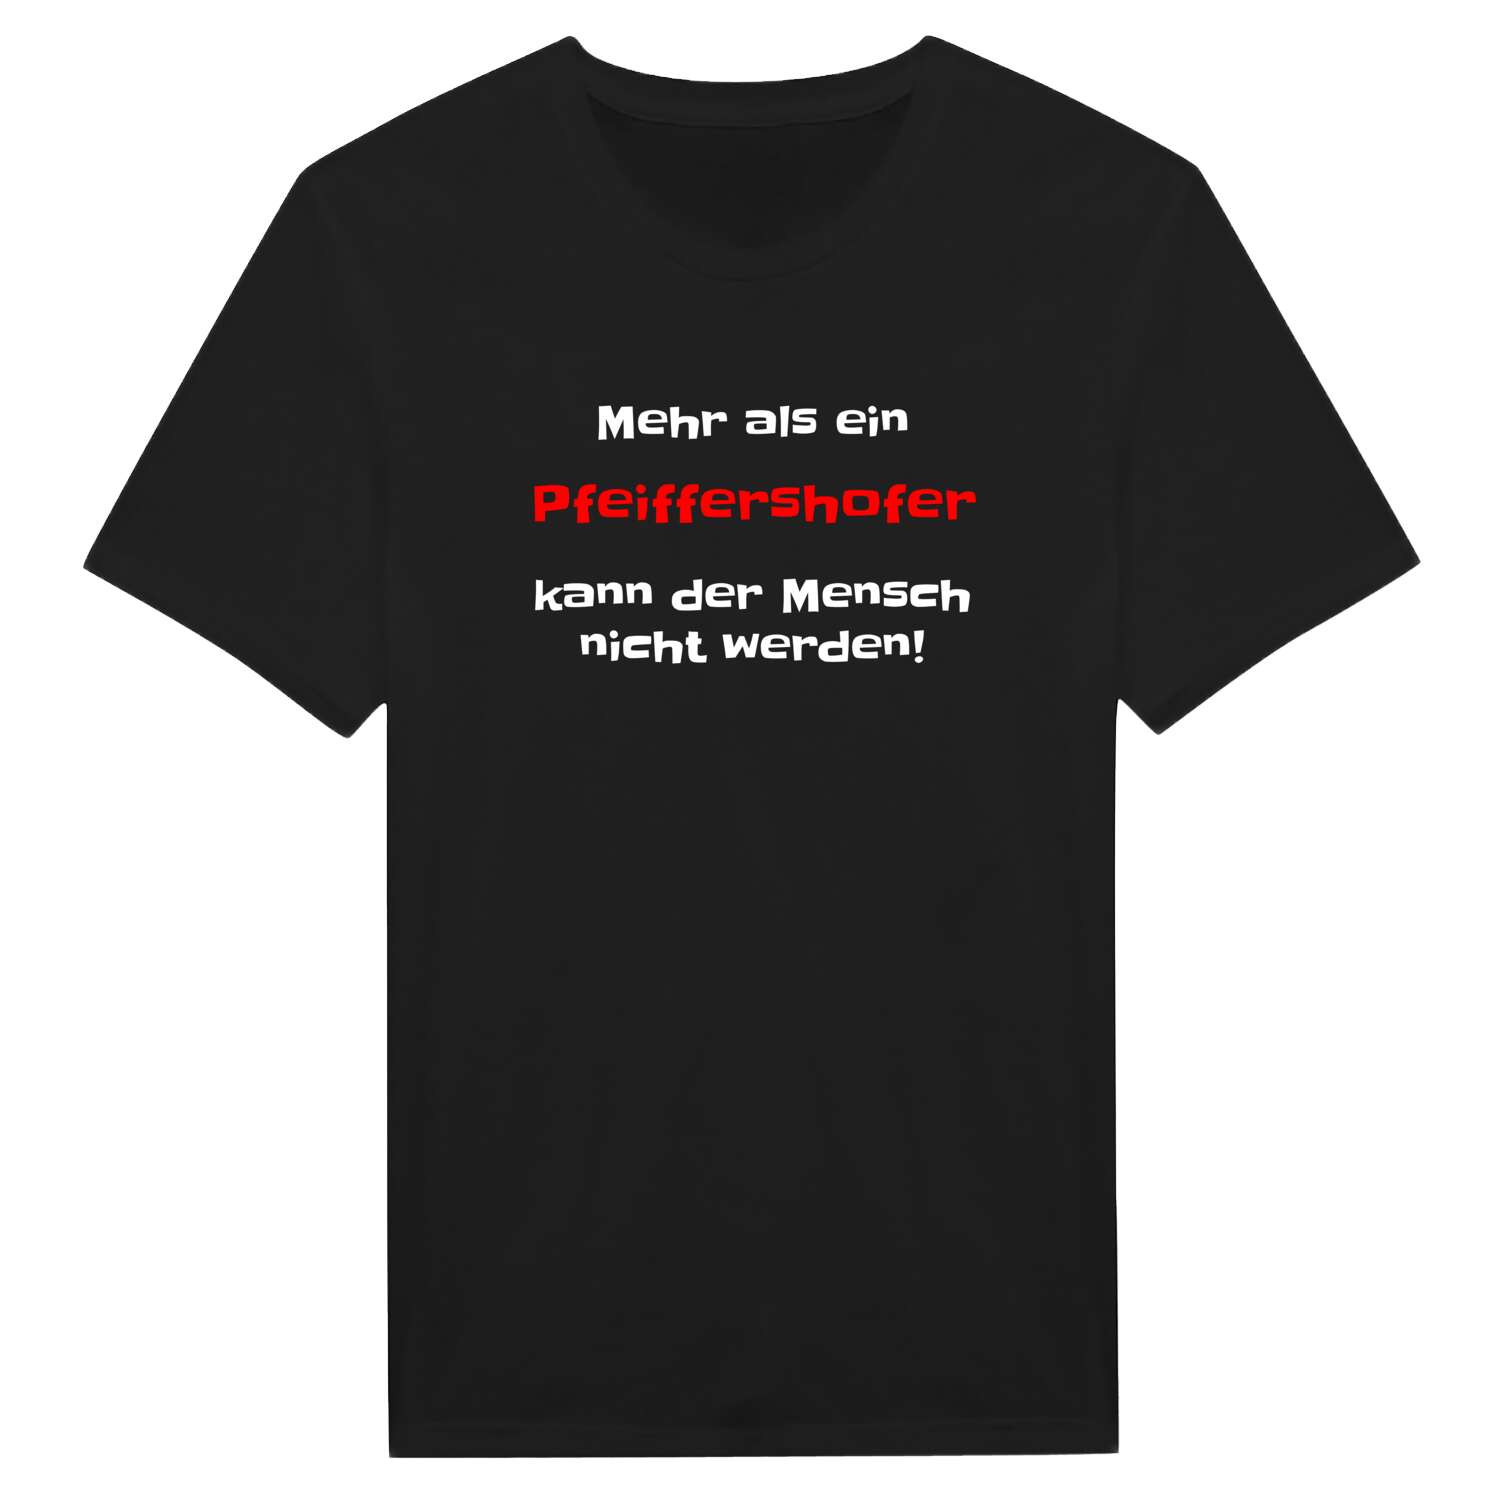 Pfeiffershof T-Shirt »Mehr als ein«